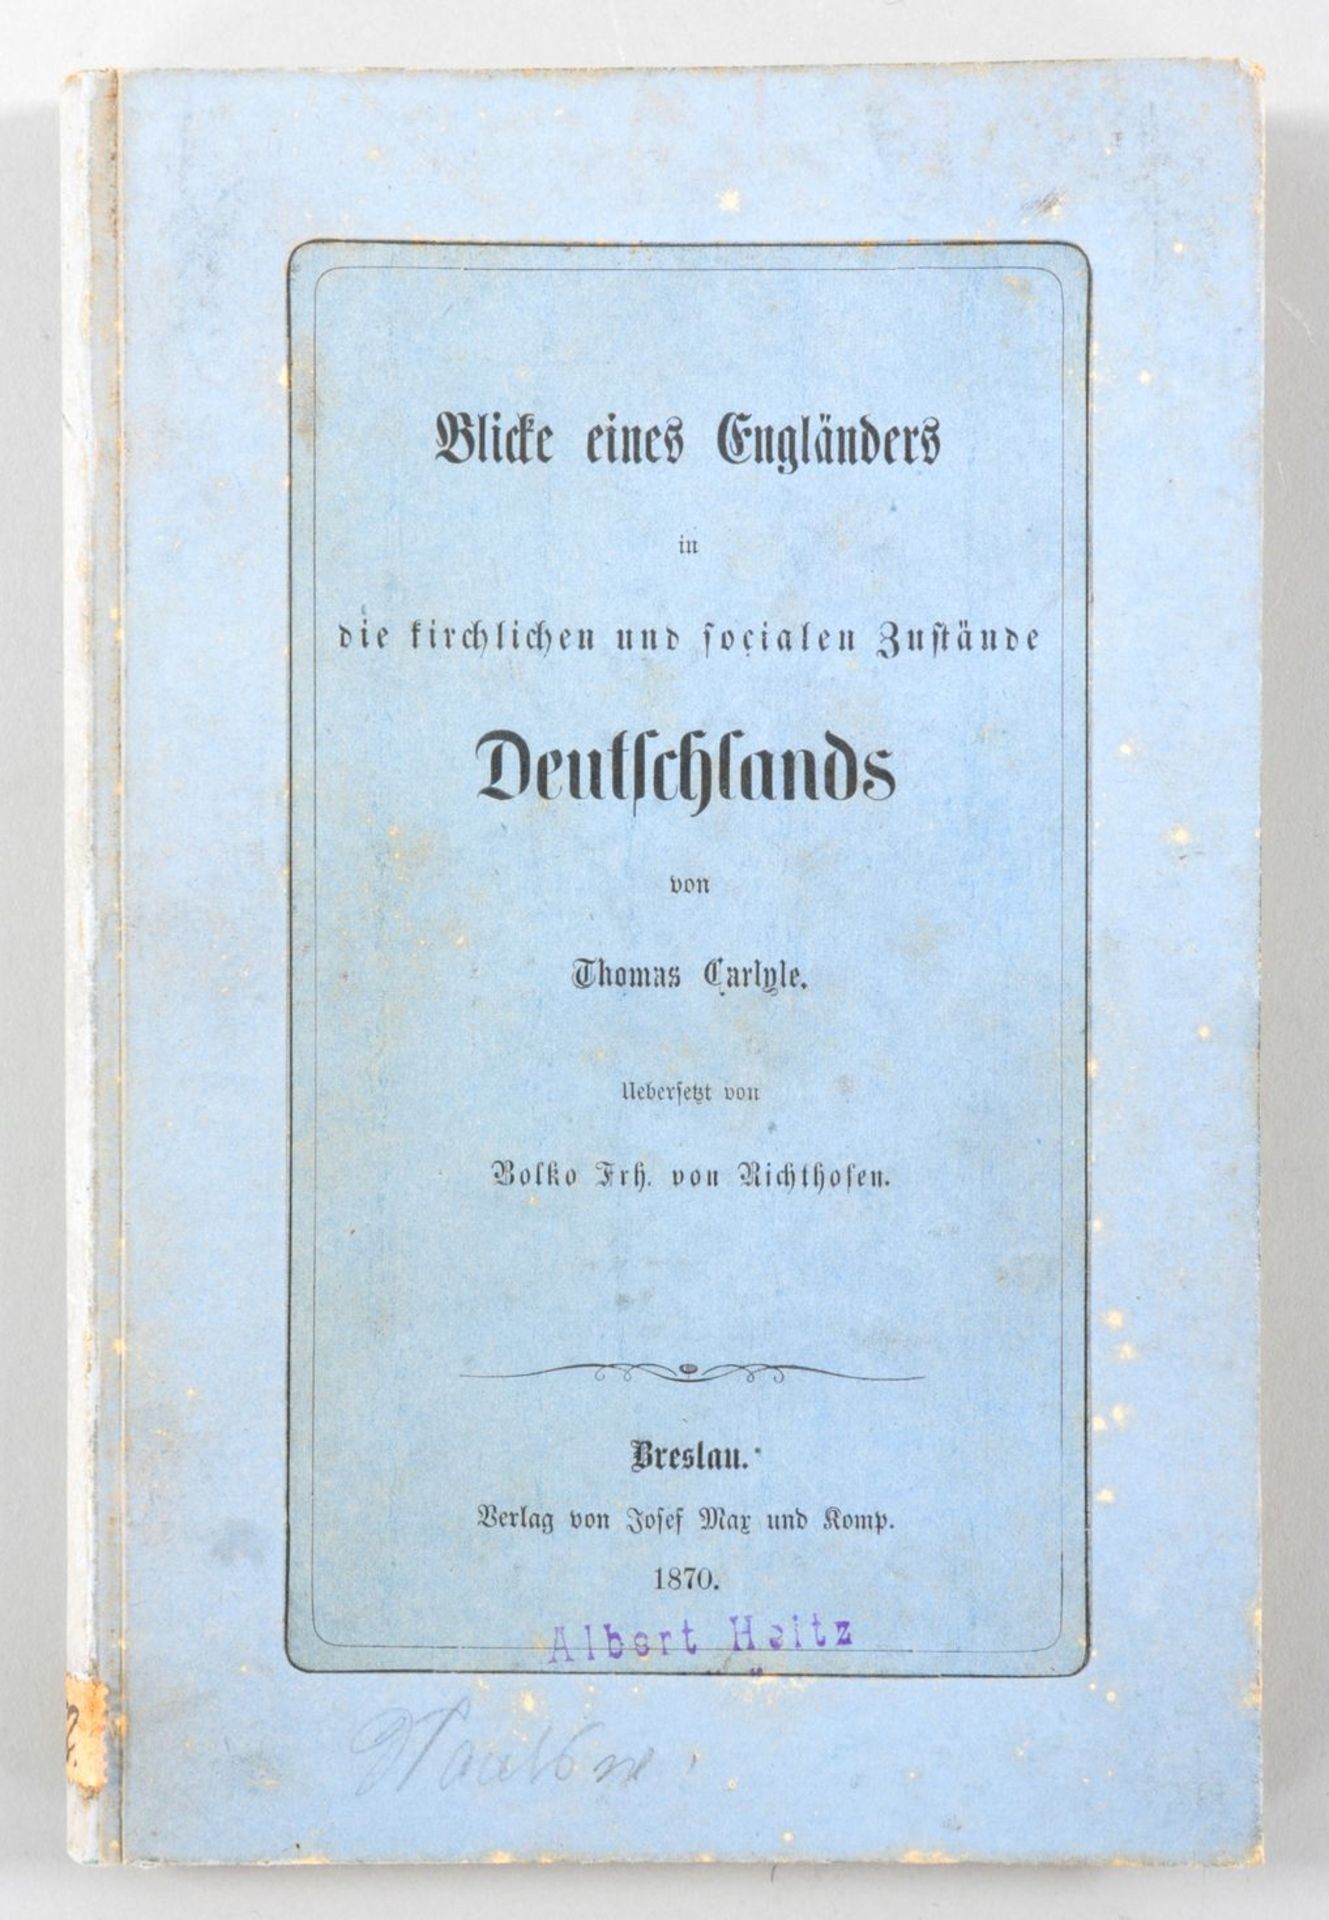 Buch "Blicke eines Engländers" a.d. Bibliothek der Marie Therese